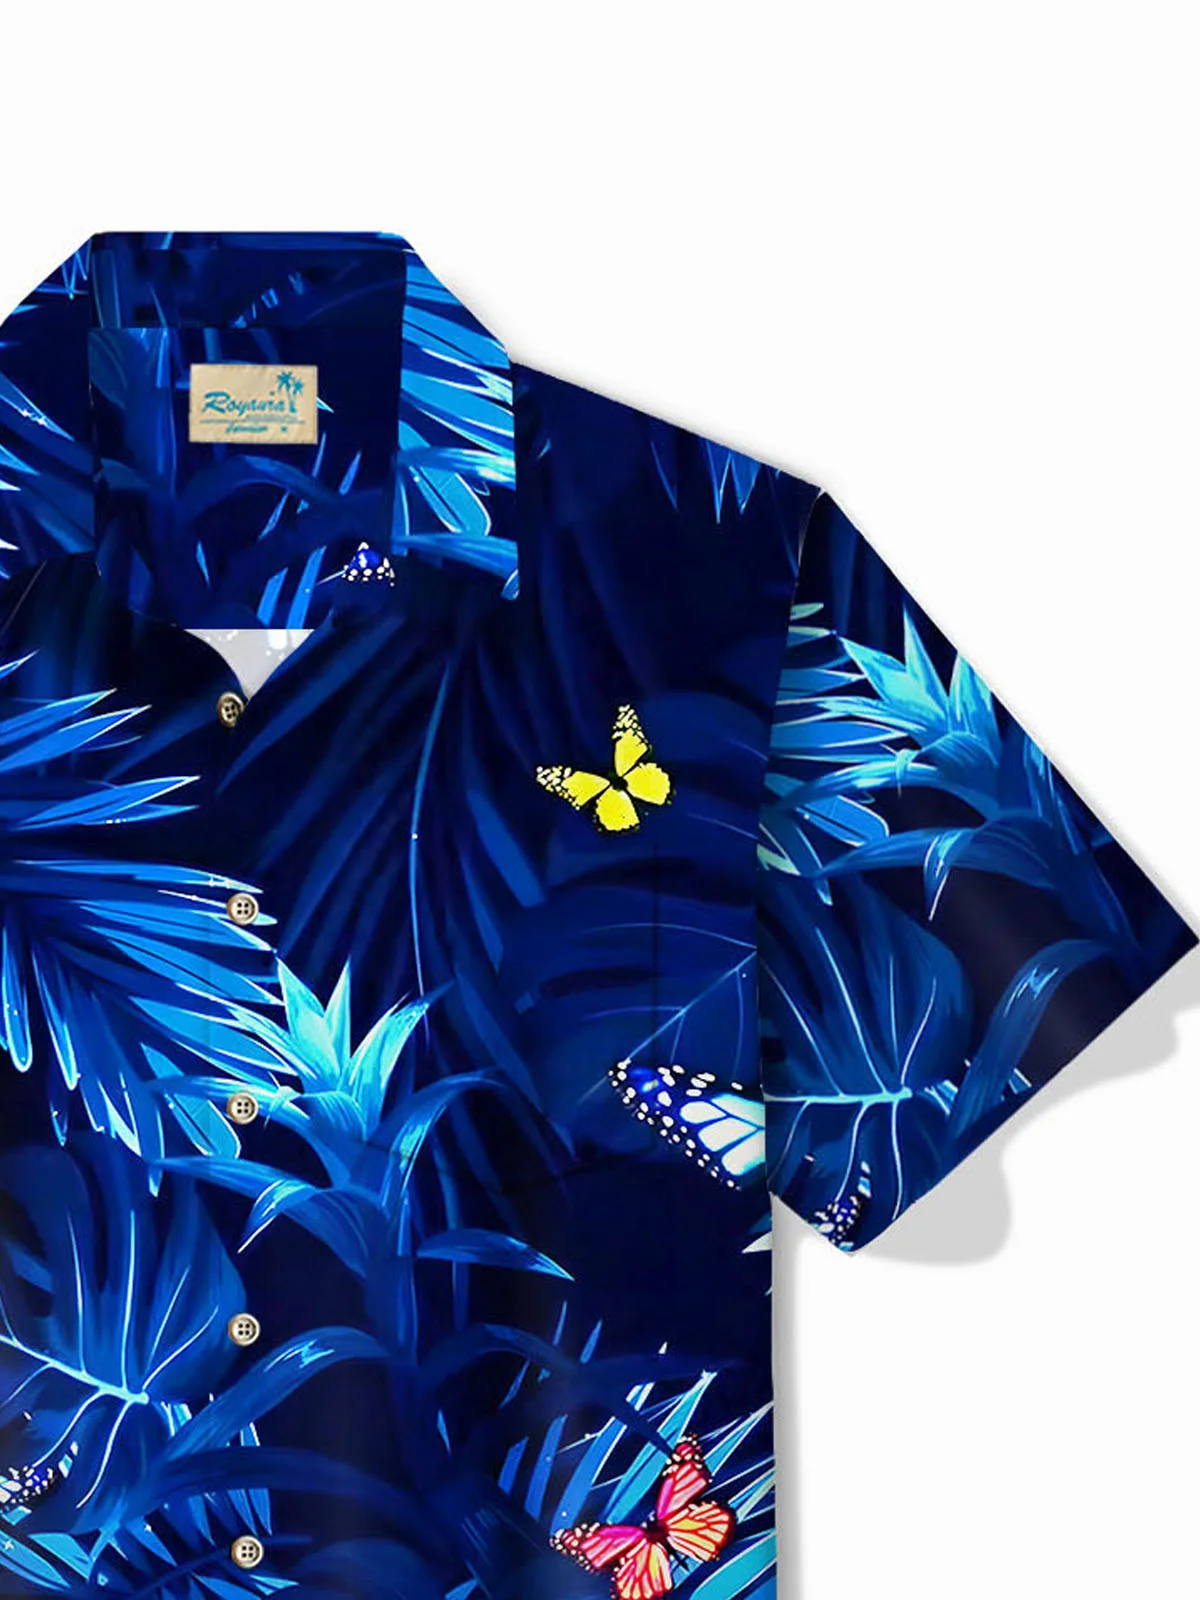 Royaura®Hawaiian Butterfly Botanical Print Men's Button Pocket Short Sleeve Shirt